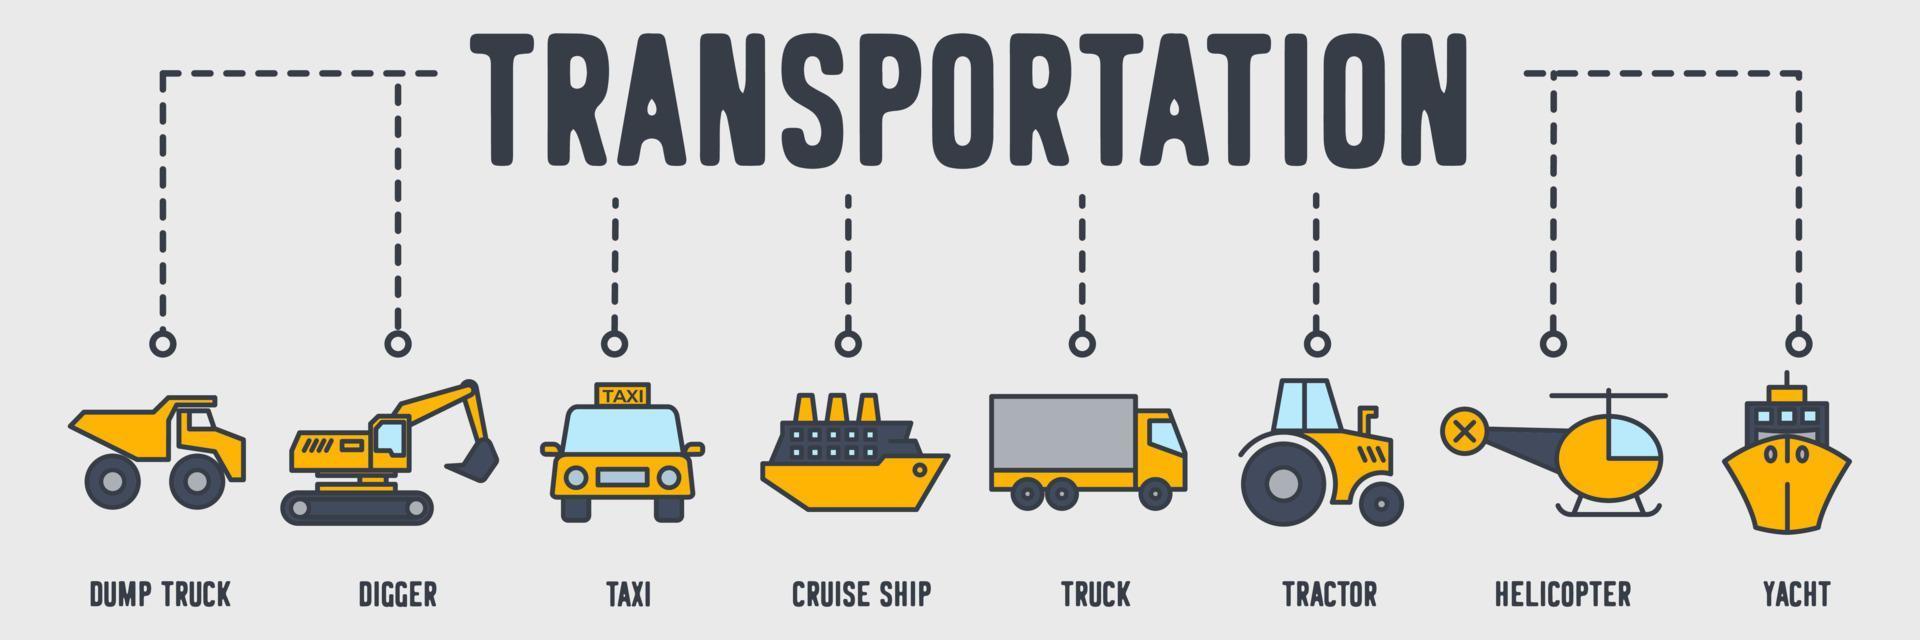 ícone de web de banner de veículo de transporte. caminhão basculante, bonde, táxi, navio de cruzeiro, caminhão, trator, helicóptero, iate, conceito de ilustração vetorial de empilhadeira. vetor